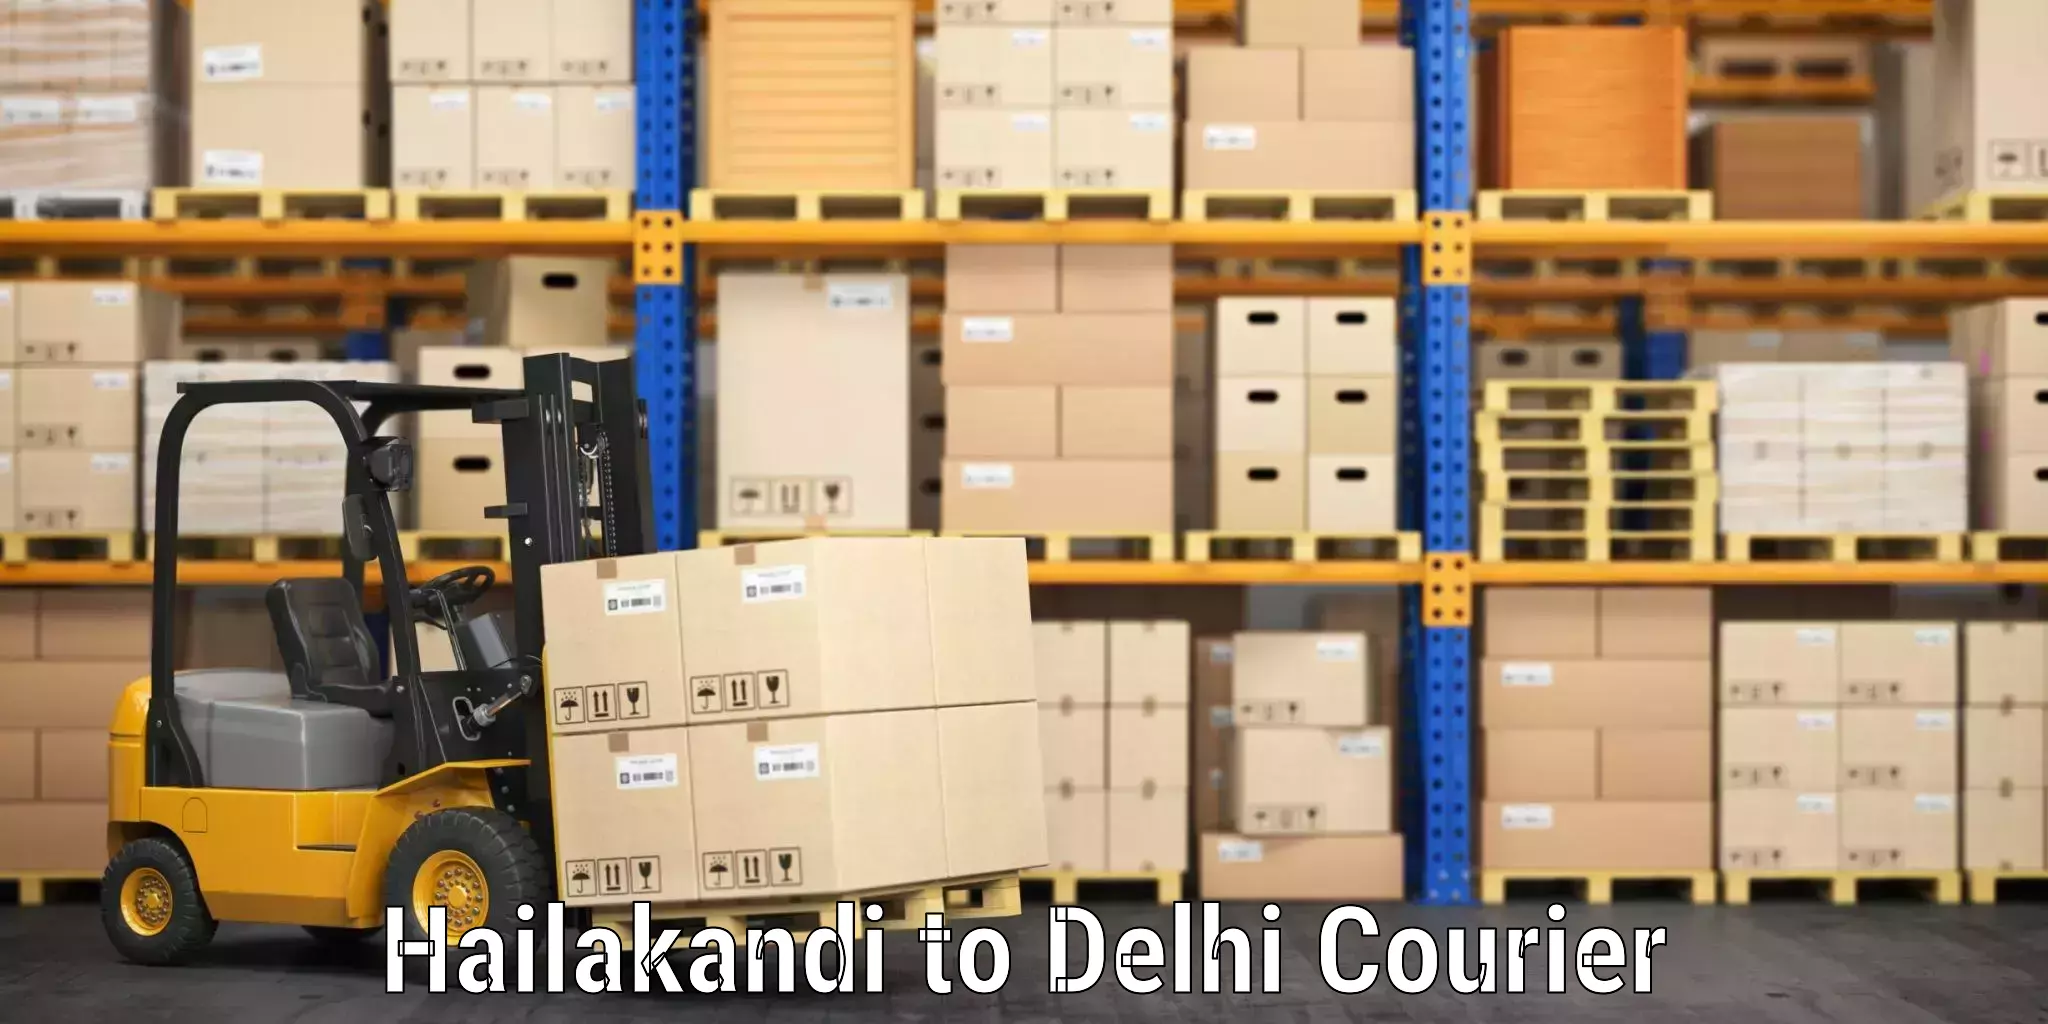 Urgent luggage shipment Hailakandi to Delhi